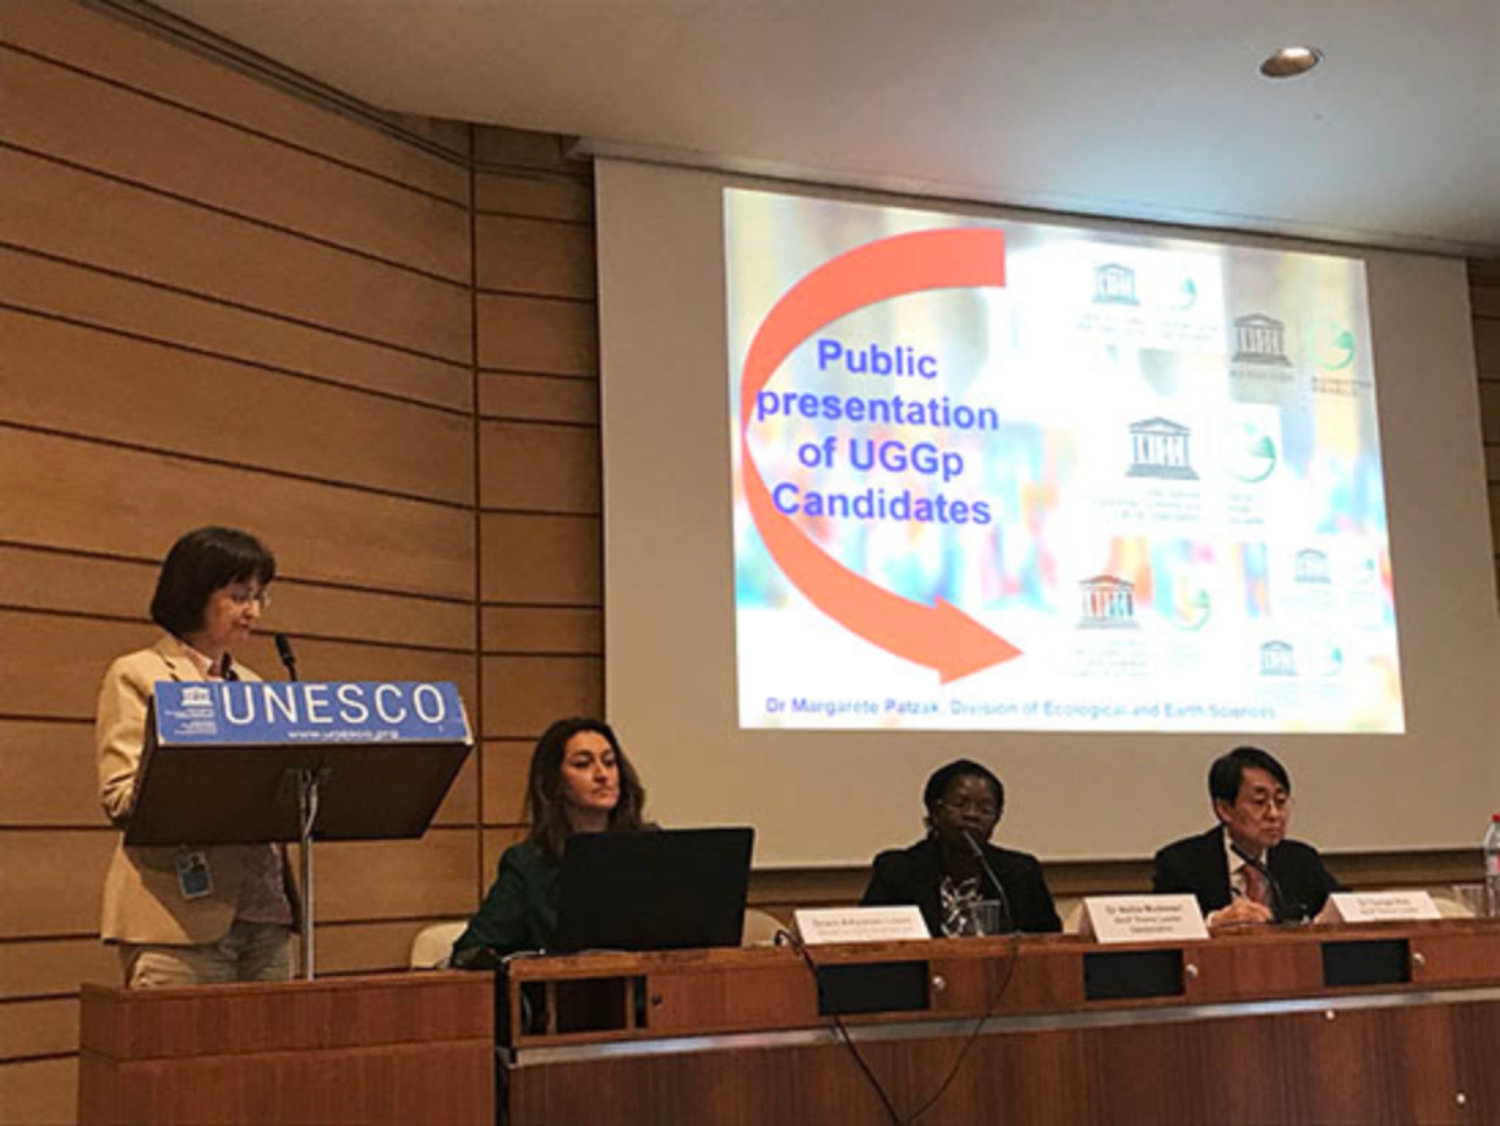 Tiến sỹ Margarete Patzak trình bày về các ứng viên mới cho danh hiệu CVĐC toàn cầu UNESCO